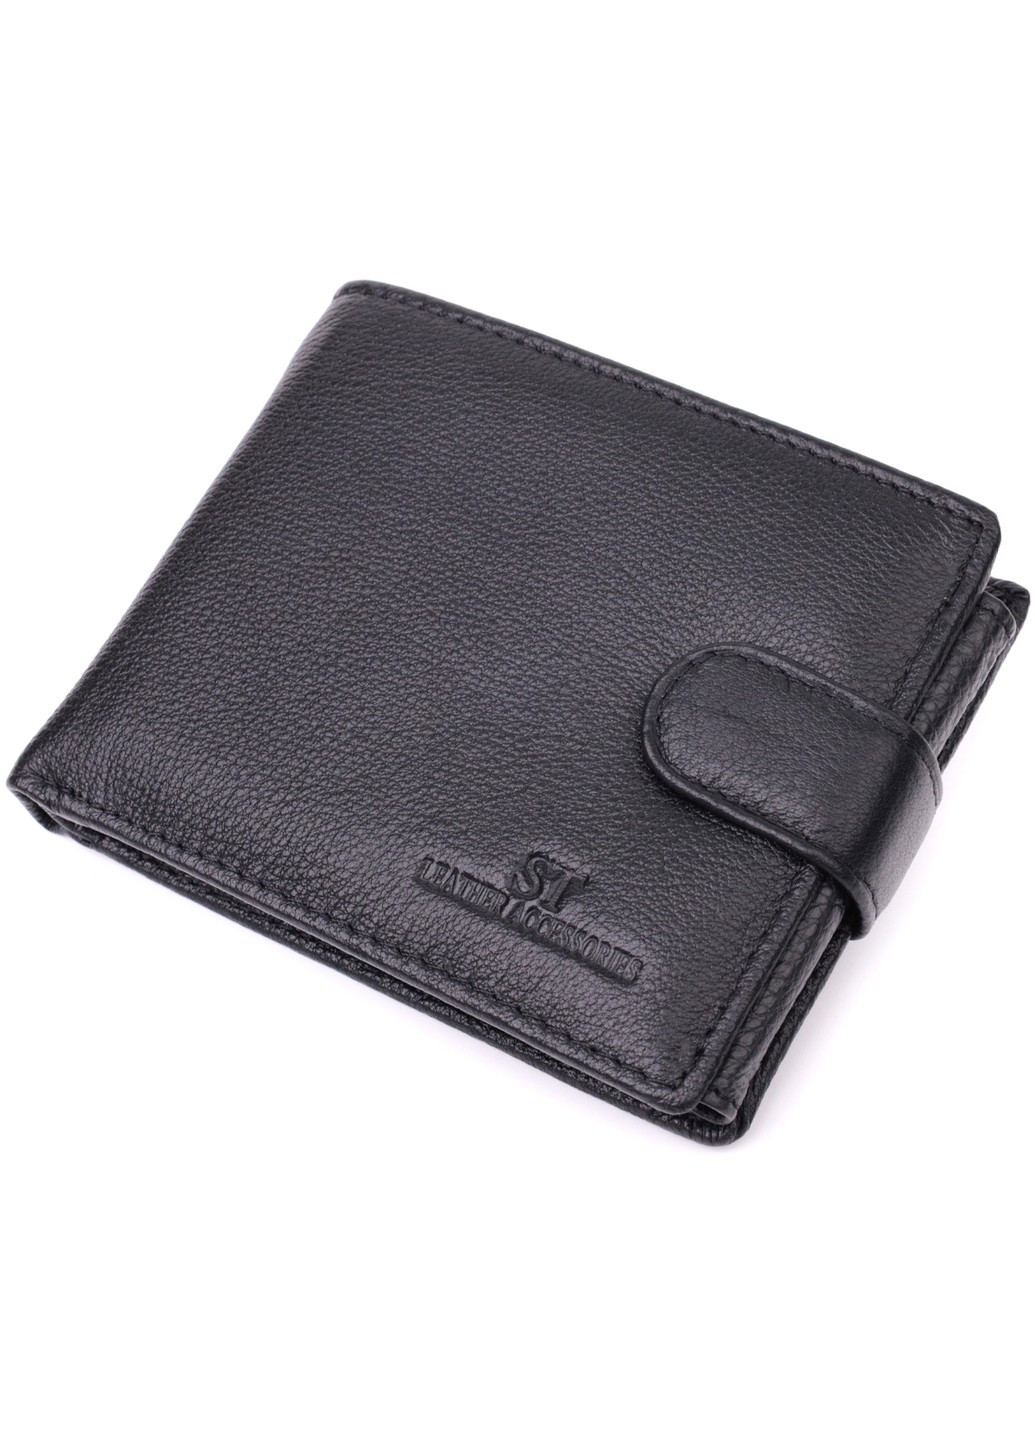 Интересный бумажник с блоком под документы из натуральной кожи 22480 Черный st leather (277980458)